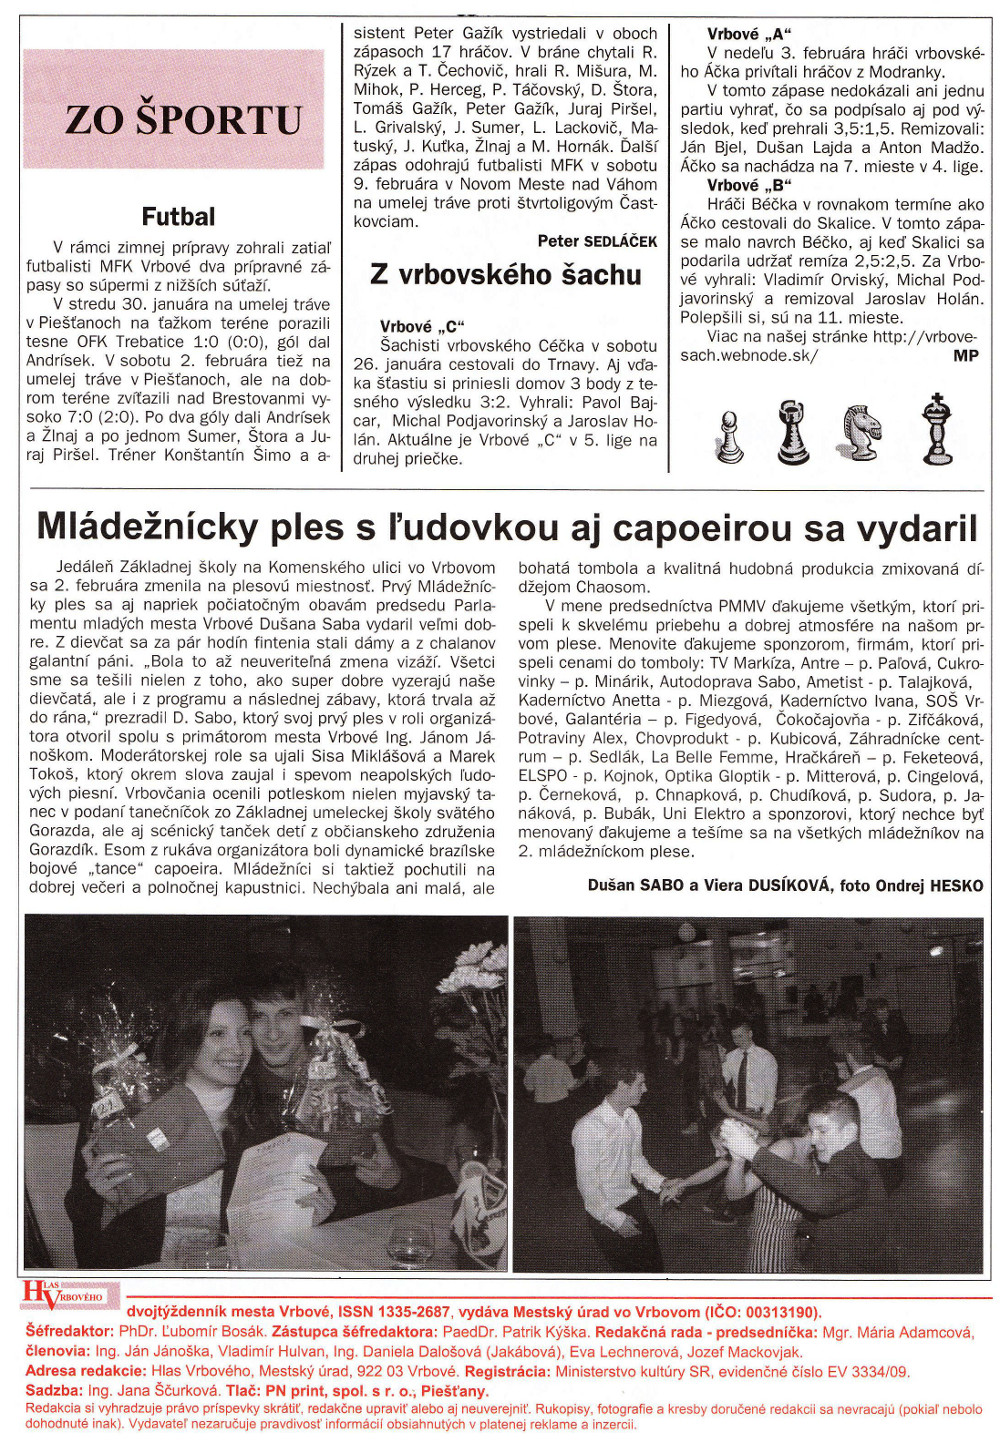 Hlas Vrbového 04/2013, strana 8